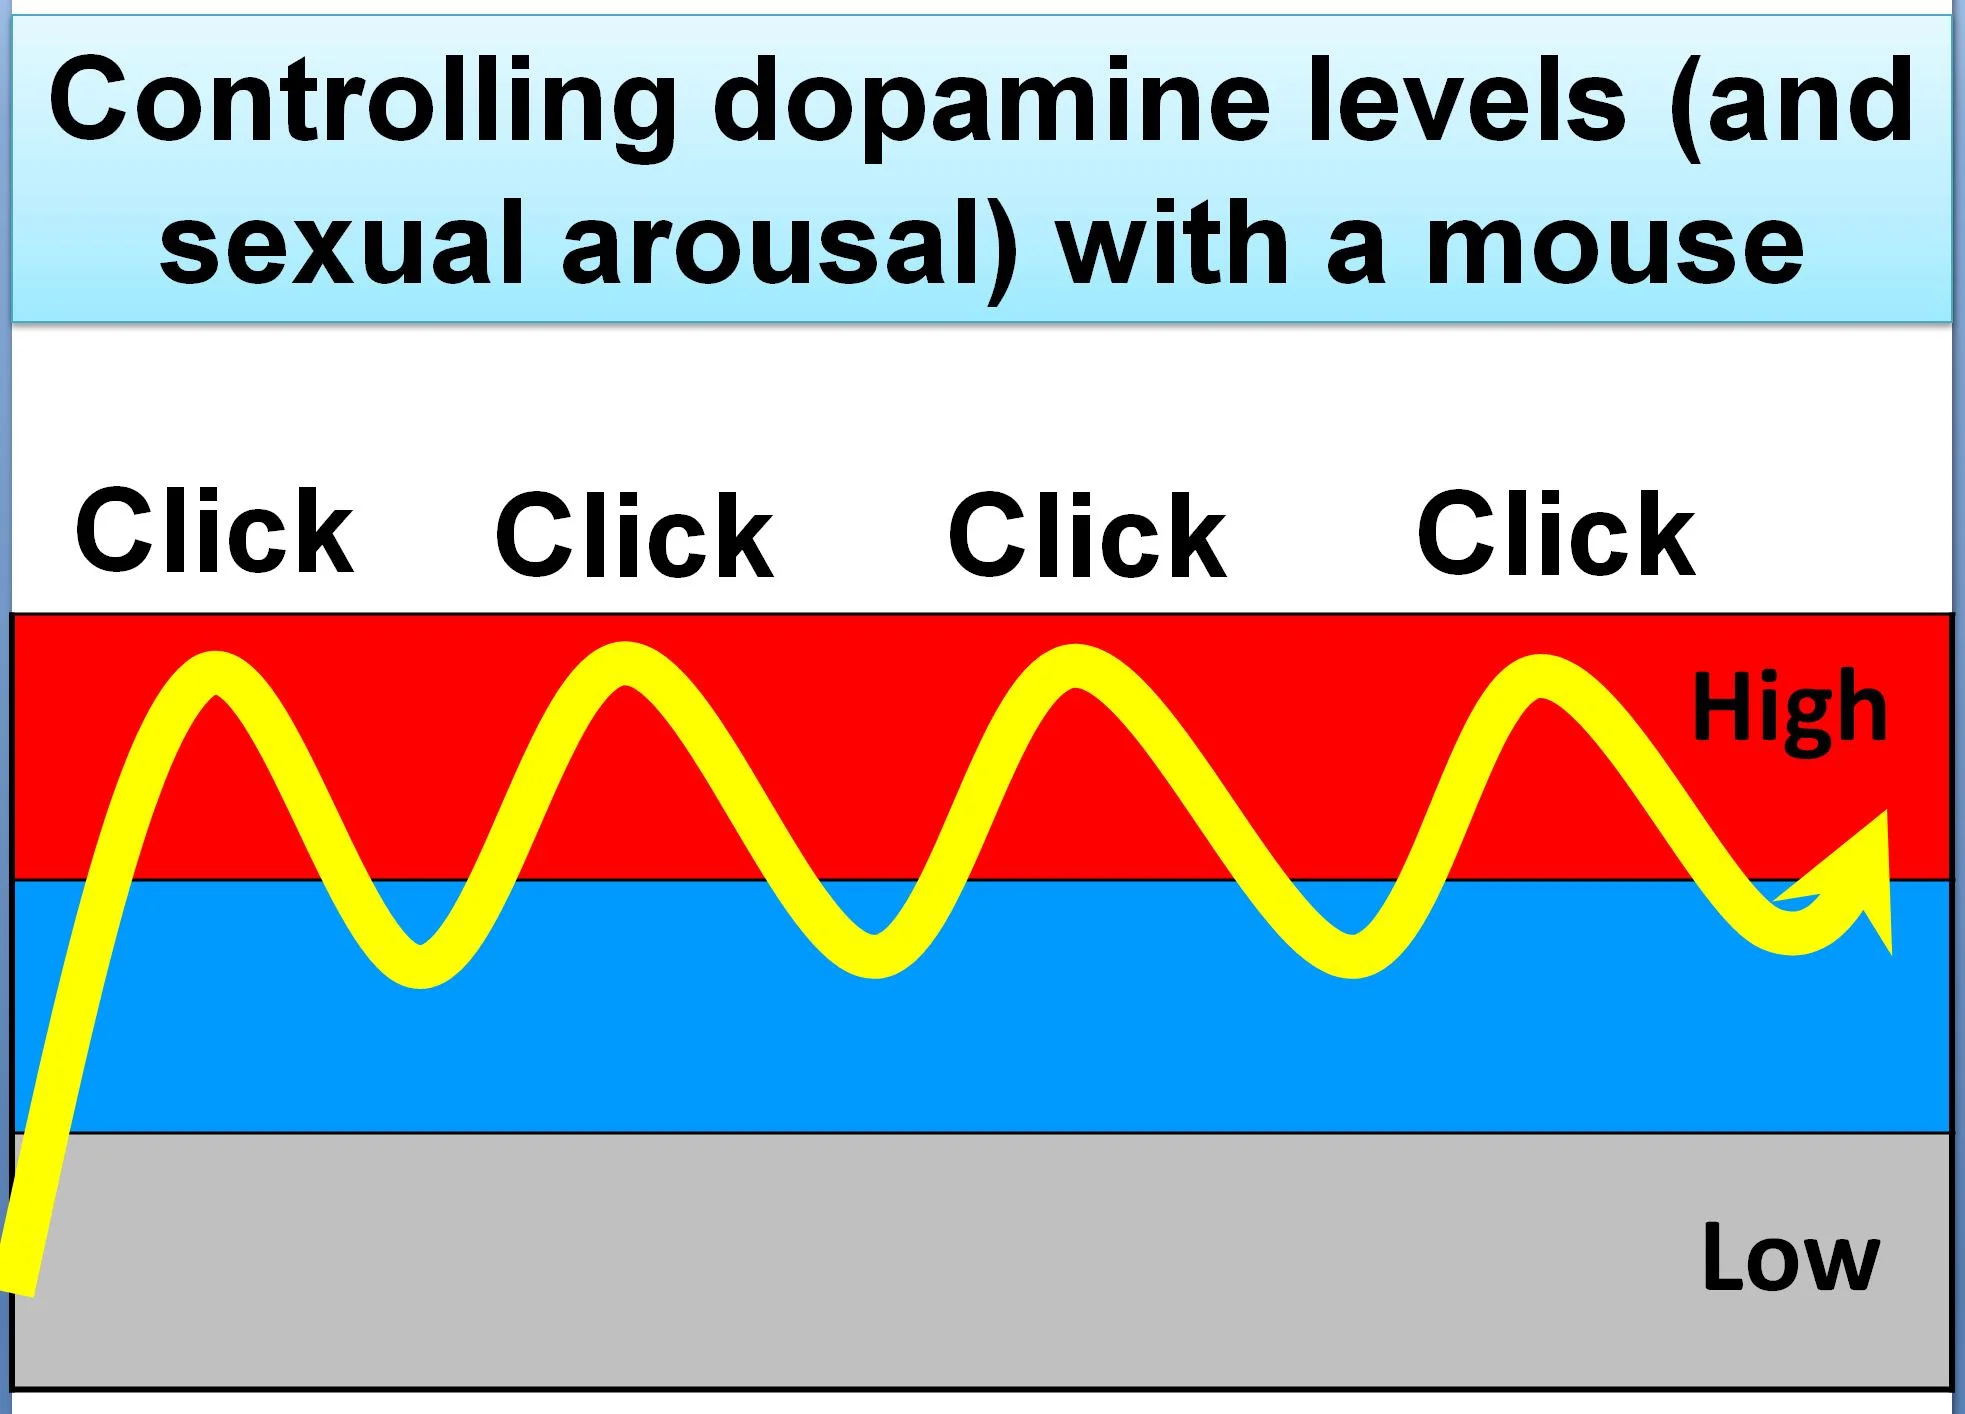 kontrollimi i niveleve të dopaminës (dhe ngjallja seksuale) gjatë shikimit të pornografisë, me klikimet e një miu